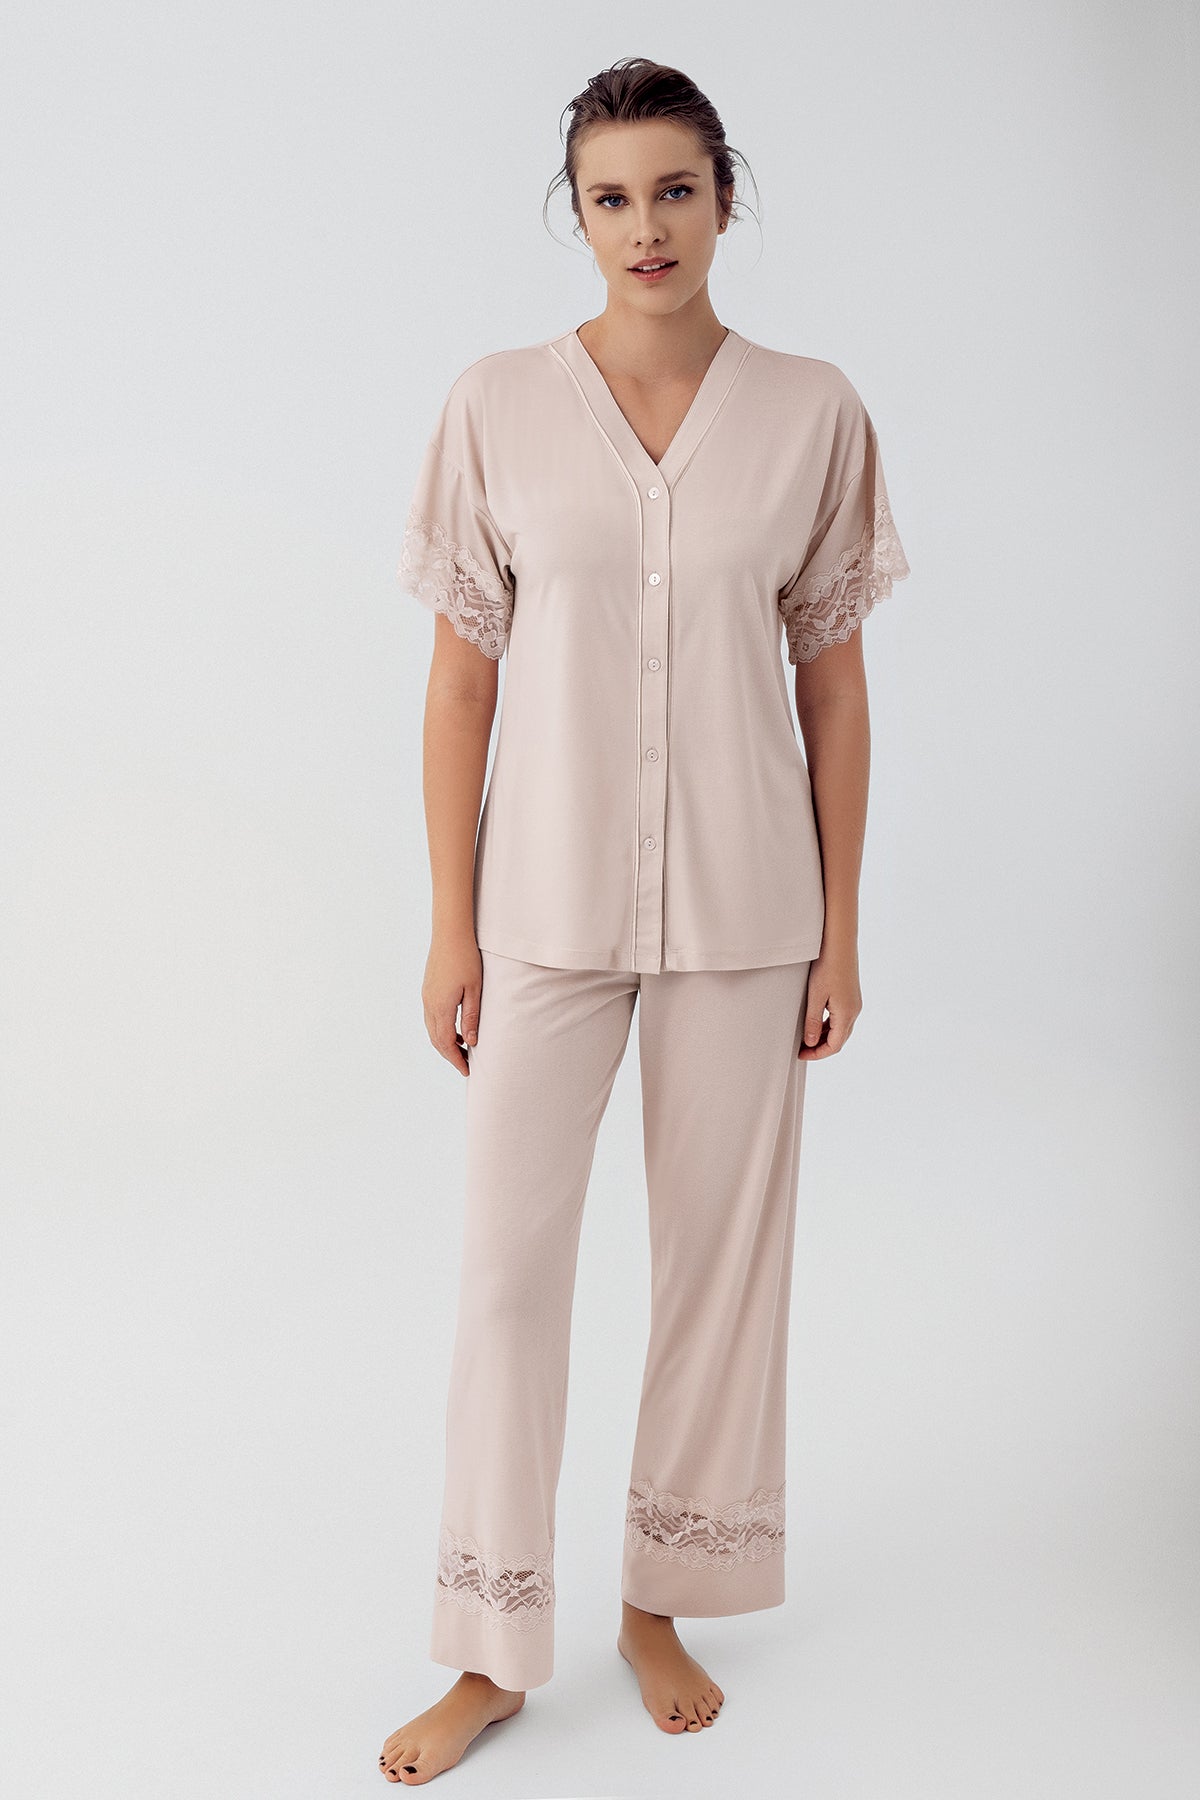 Shopymommy 16211 Lace Sleeve Maternity & Nursing Pajamas Beige